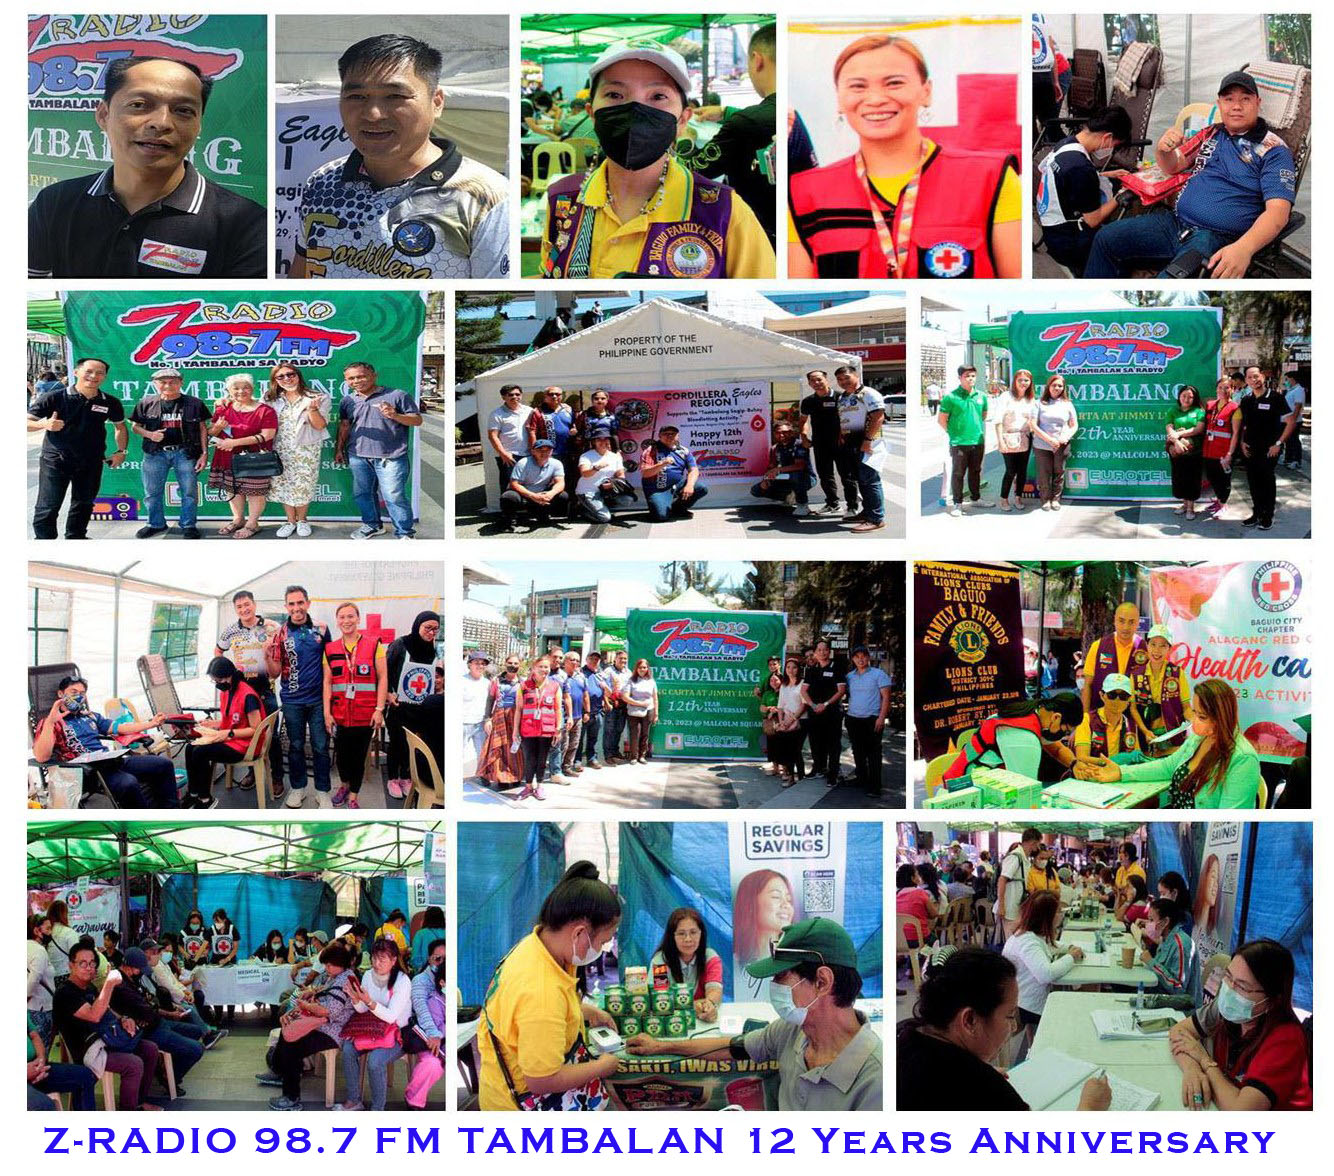 12 years anniversary ng Tambalan Tang-Long nagsagawa ng Medical Mission